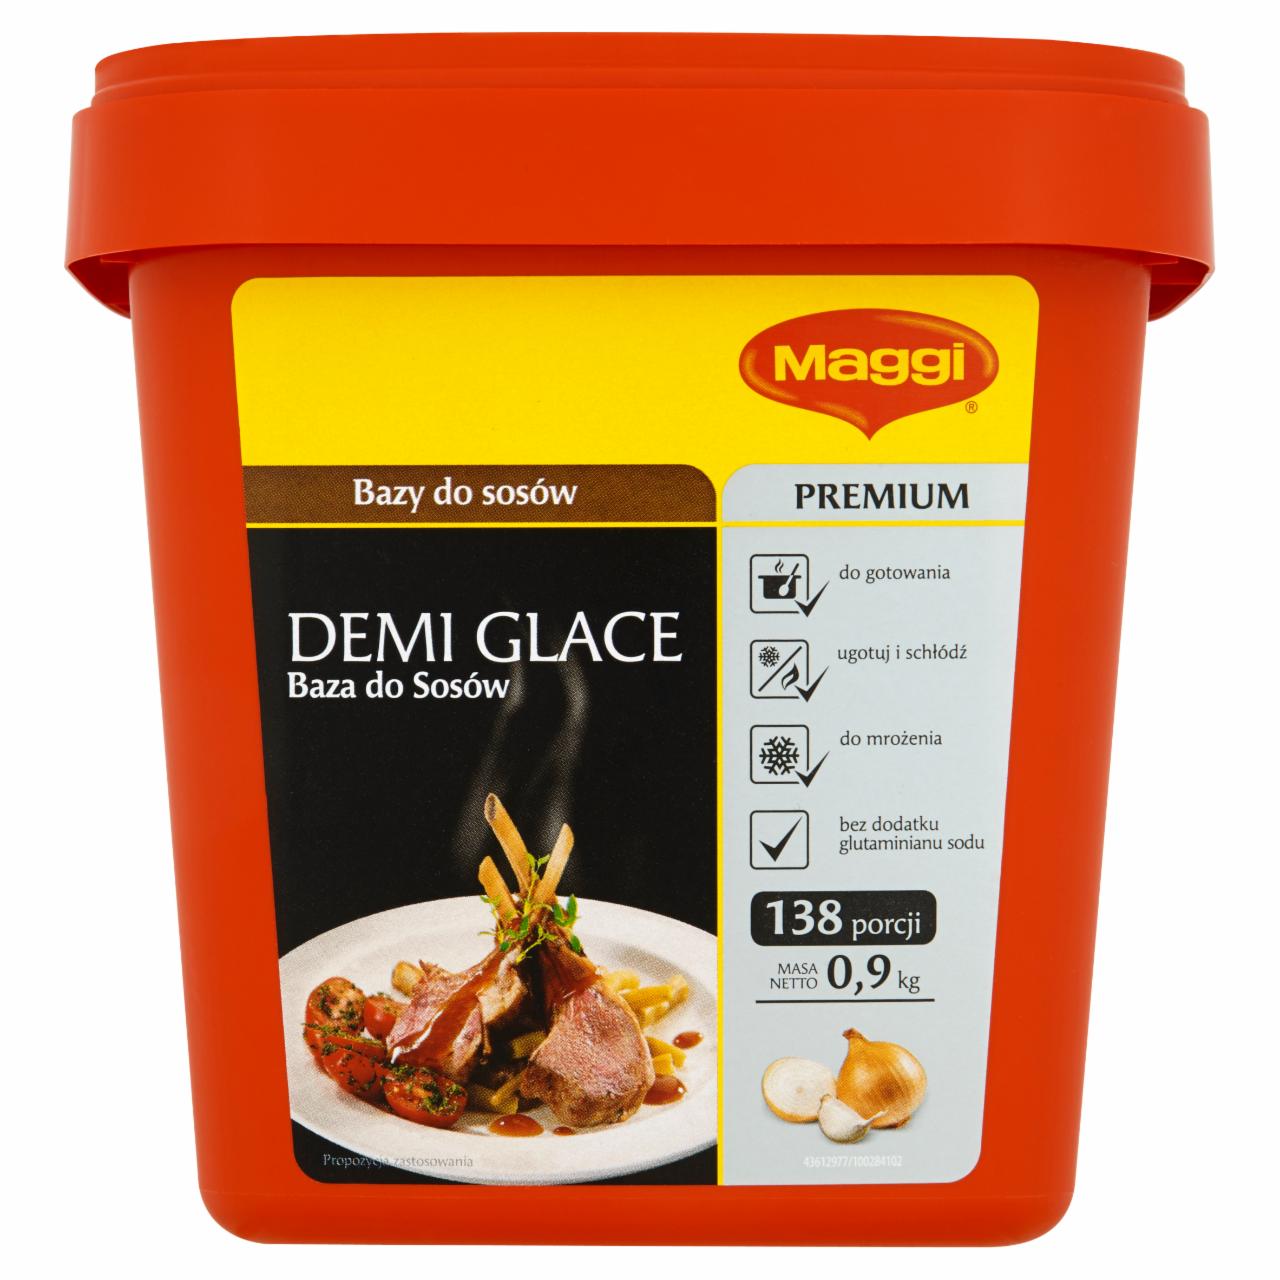 Zdjęcia - Maggi Premium Demi Glace Baza do sosów 900 g